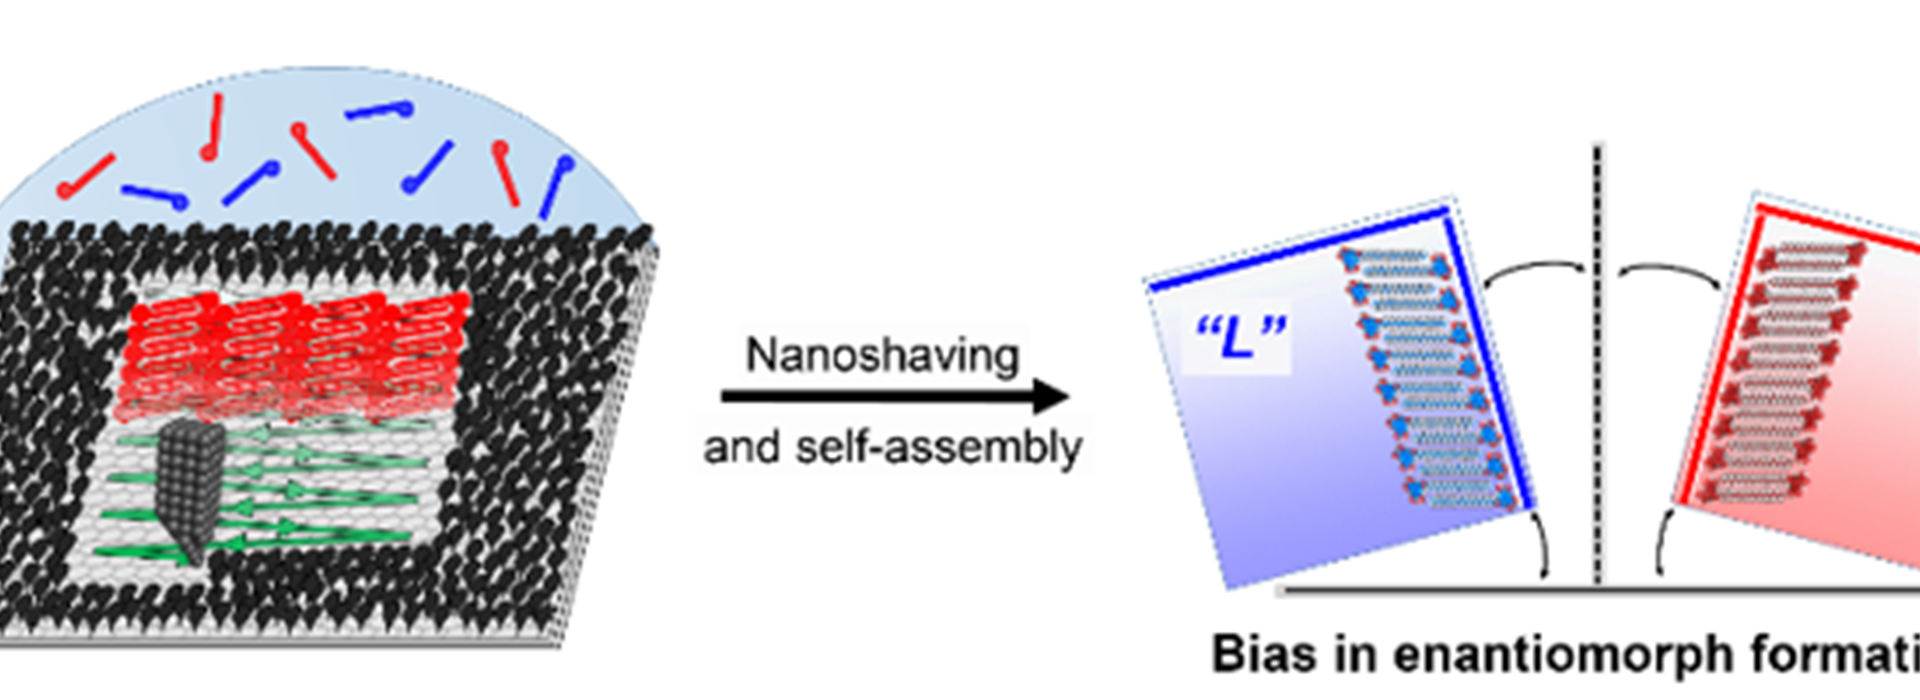 Nanoshaving and chirality: new paper in JACS